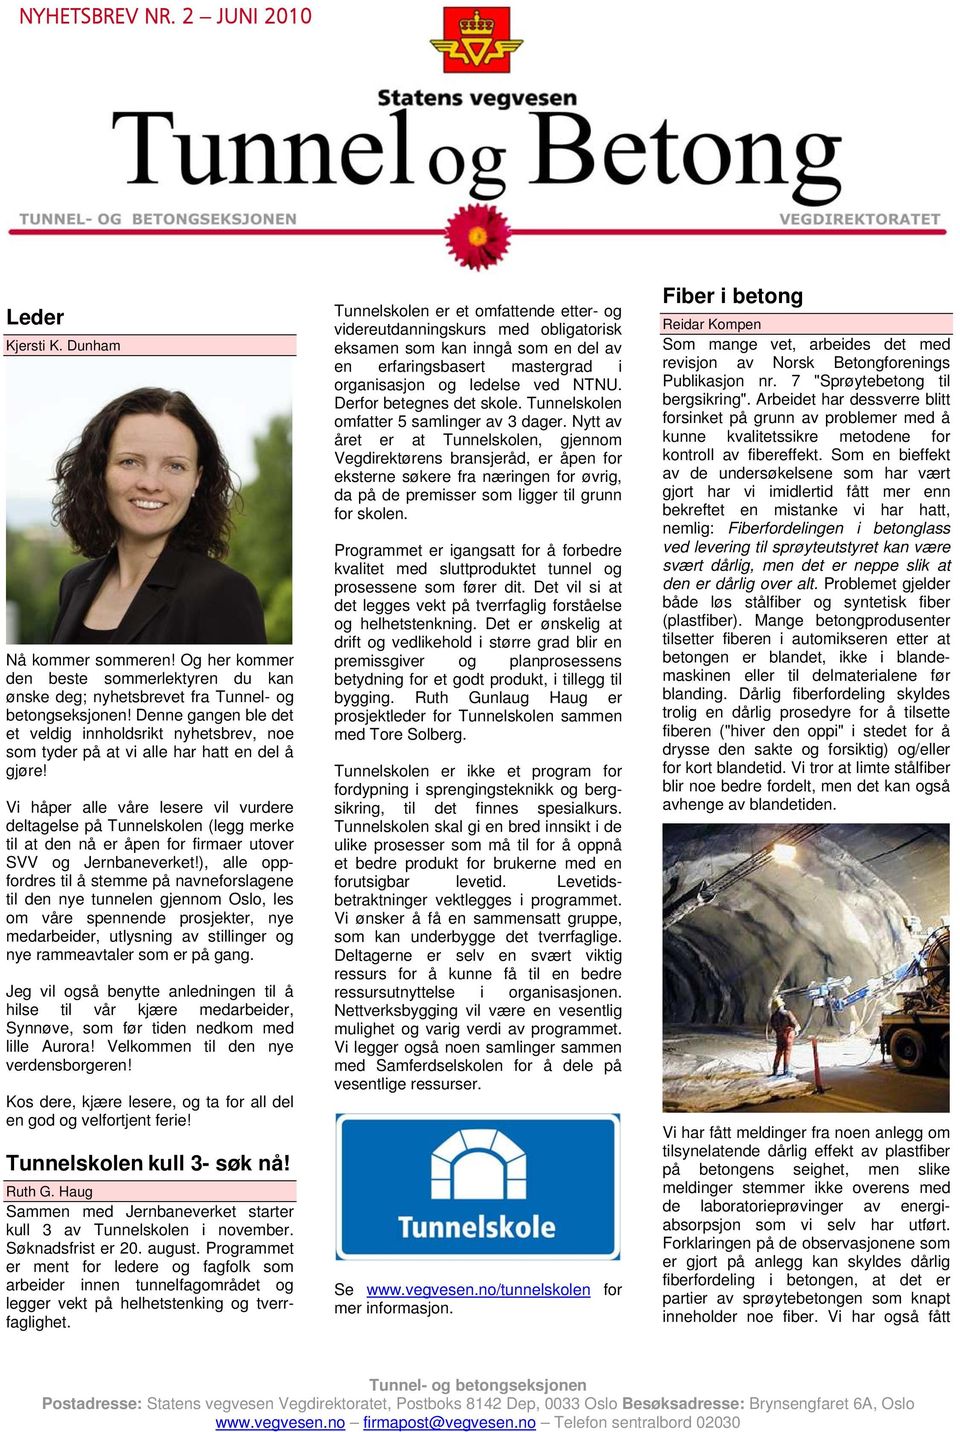 Vi håper alle våre lesere vil vurdere deltagelse på Tunnelskolen (legg merke til at den nå er åpen for firmaer utover SVV og Jernbaneverket!